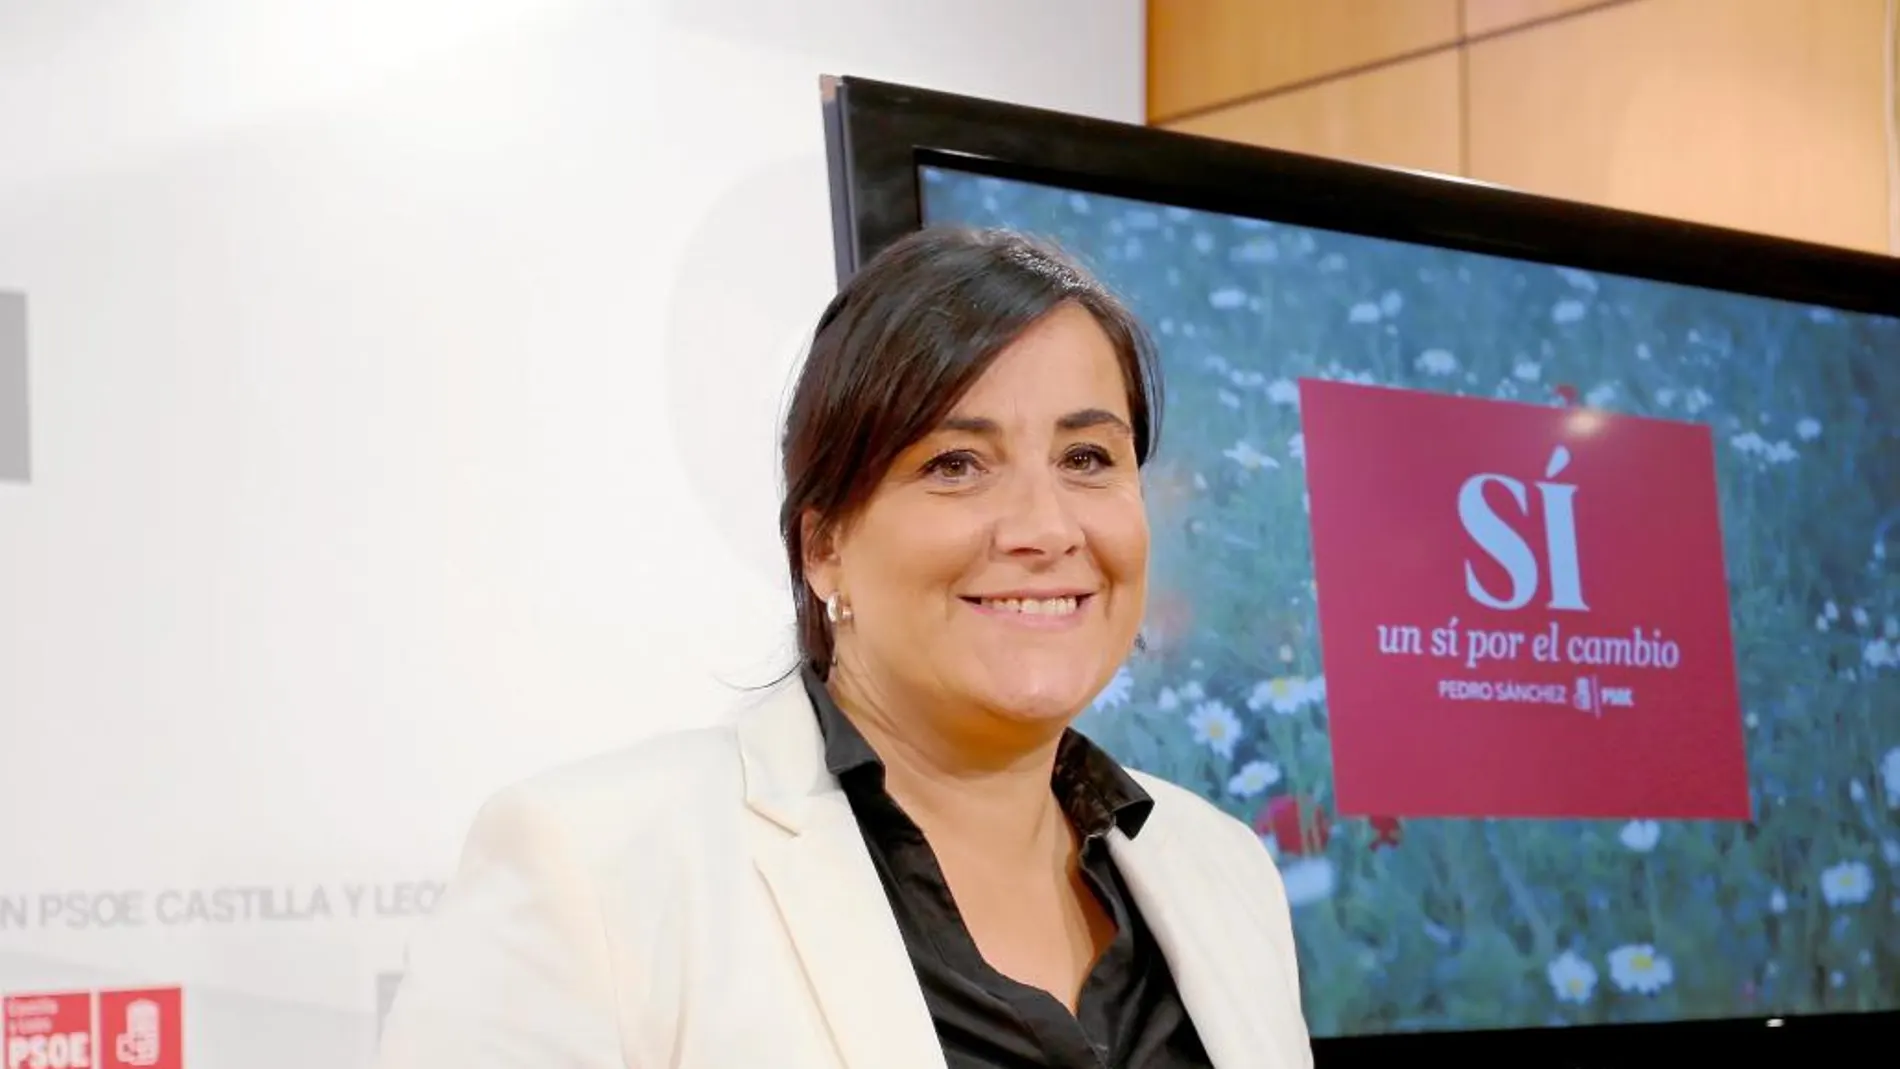 Ana Sánchez presenta la campaña del PSOE «Sí, un sí por el cambio»